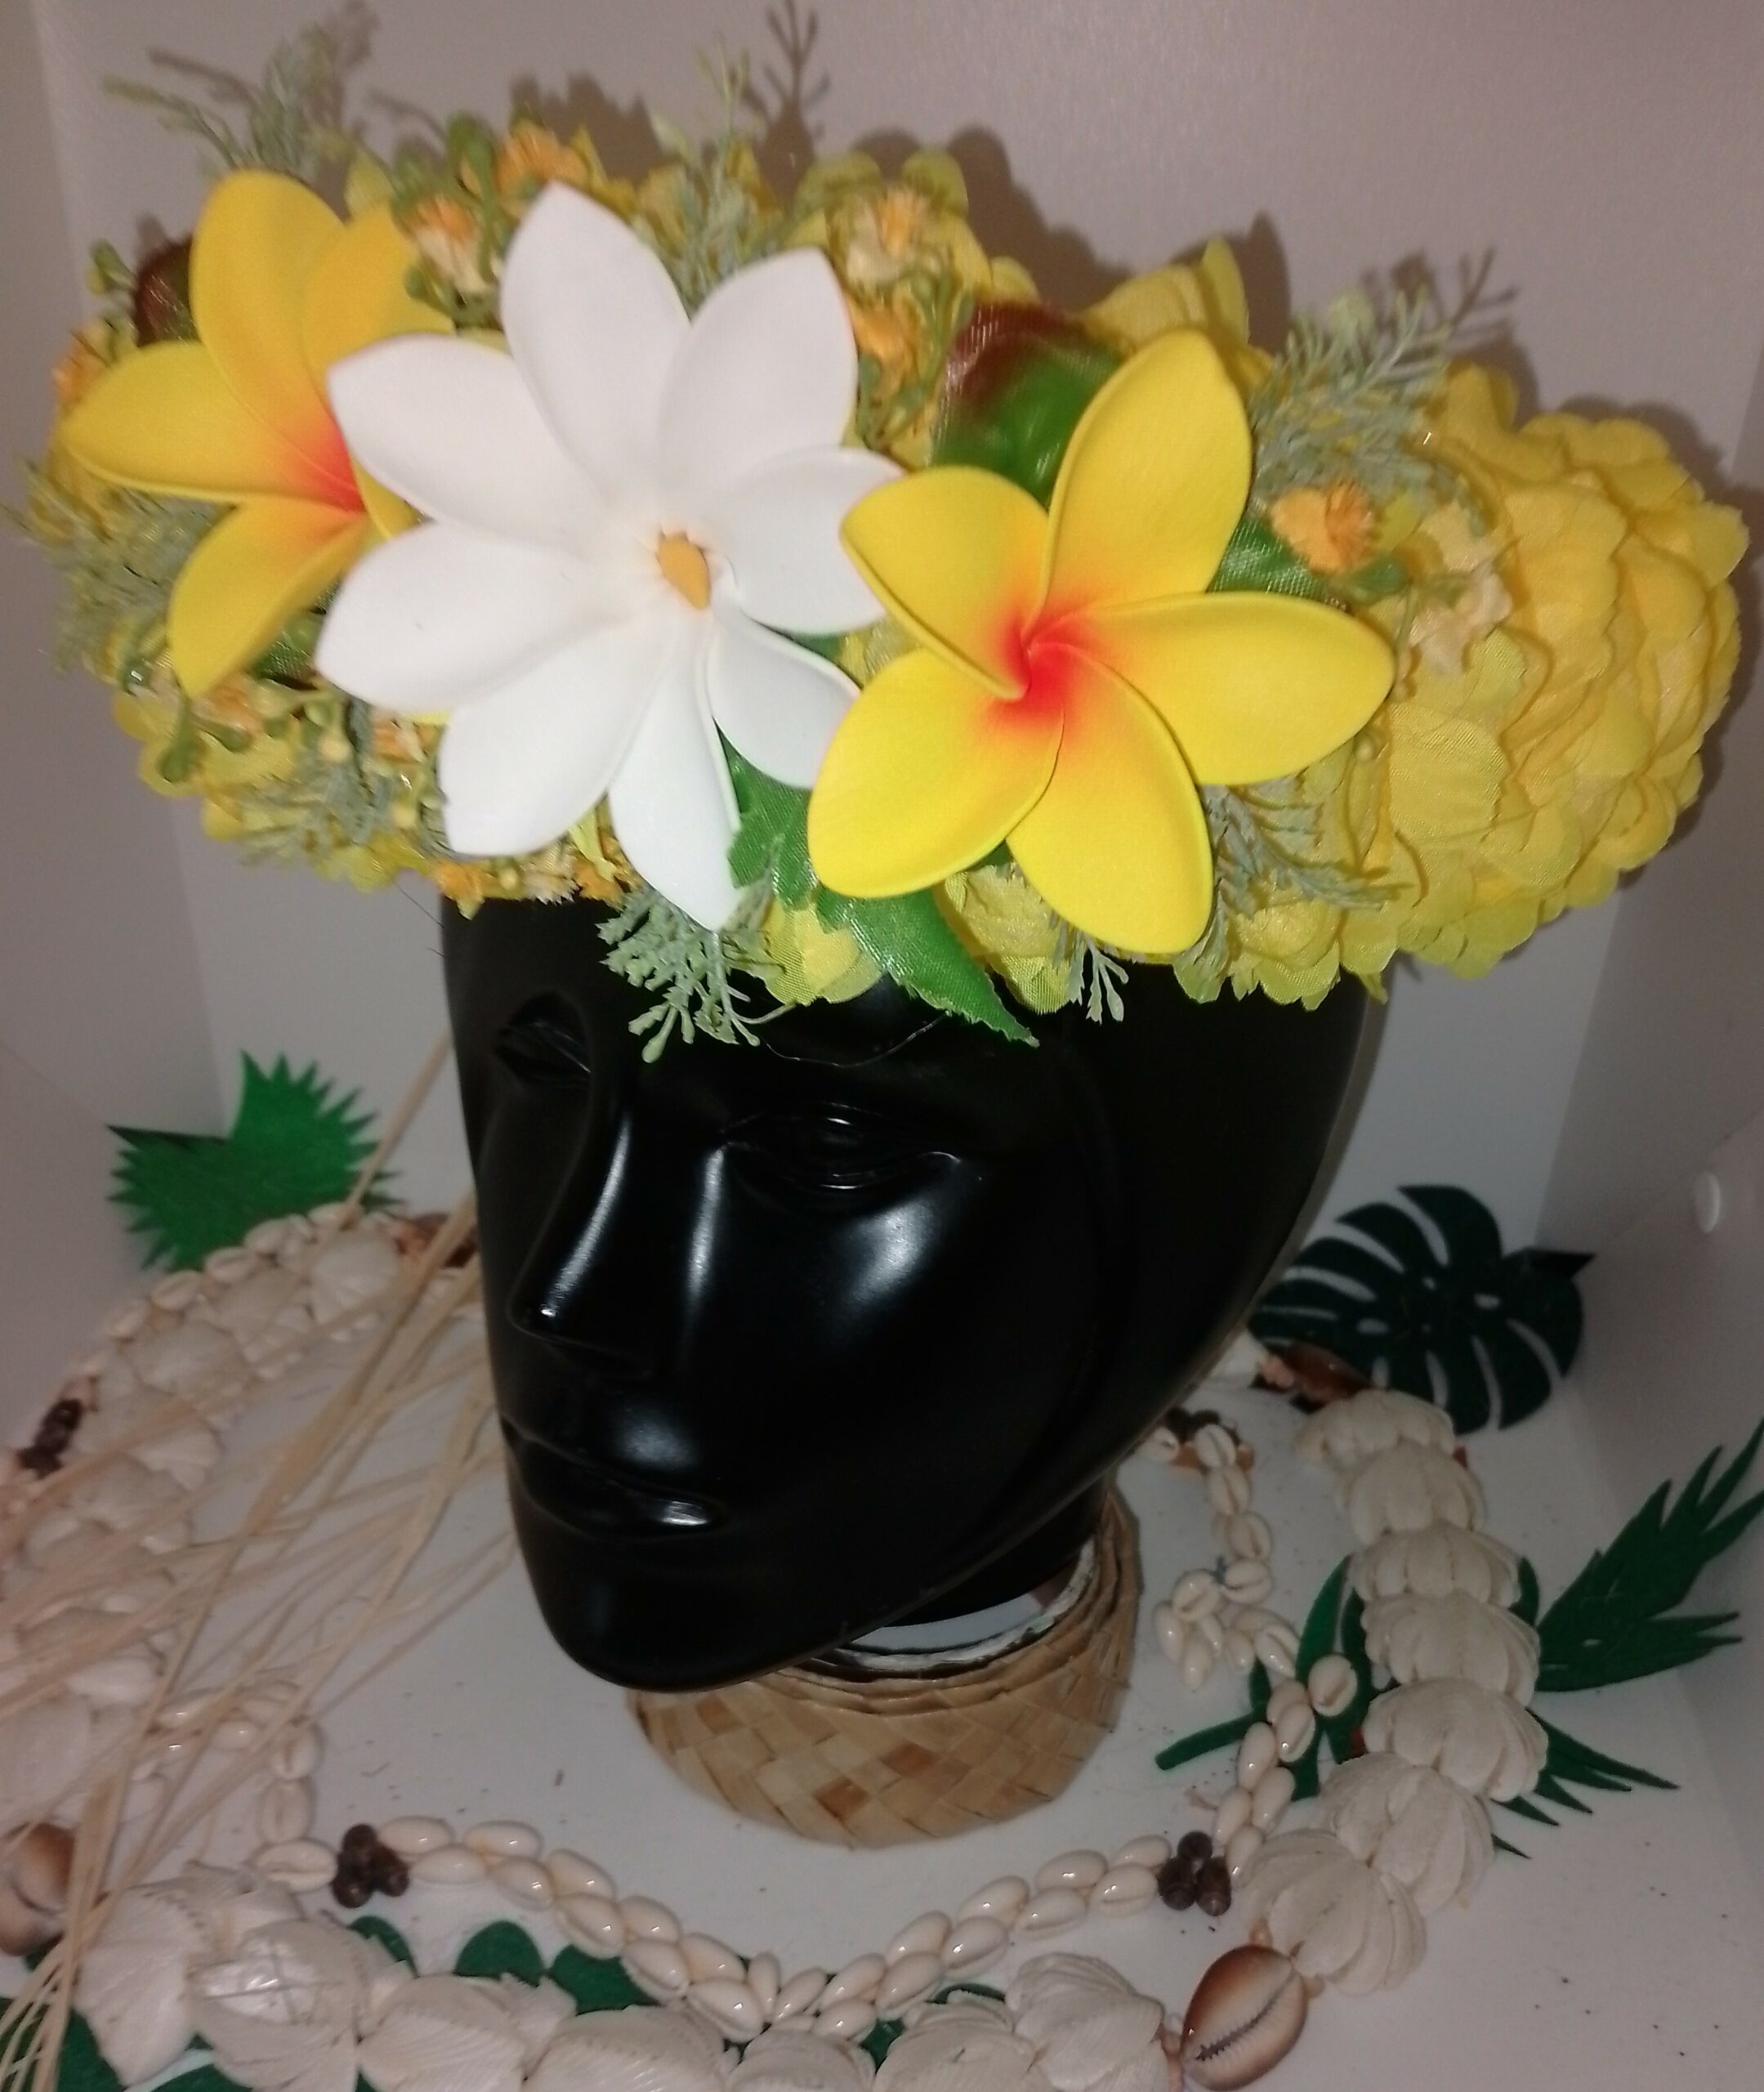 couronne de tête avec fleurs tahitiennes jaune deux tipaniers jaunes cœur orange et tiare tahiti by Vaite.e.Tiare créations